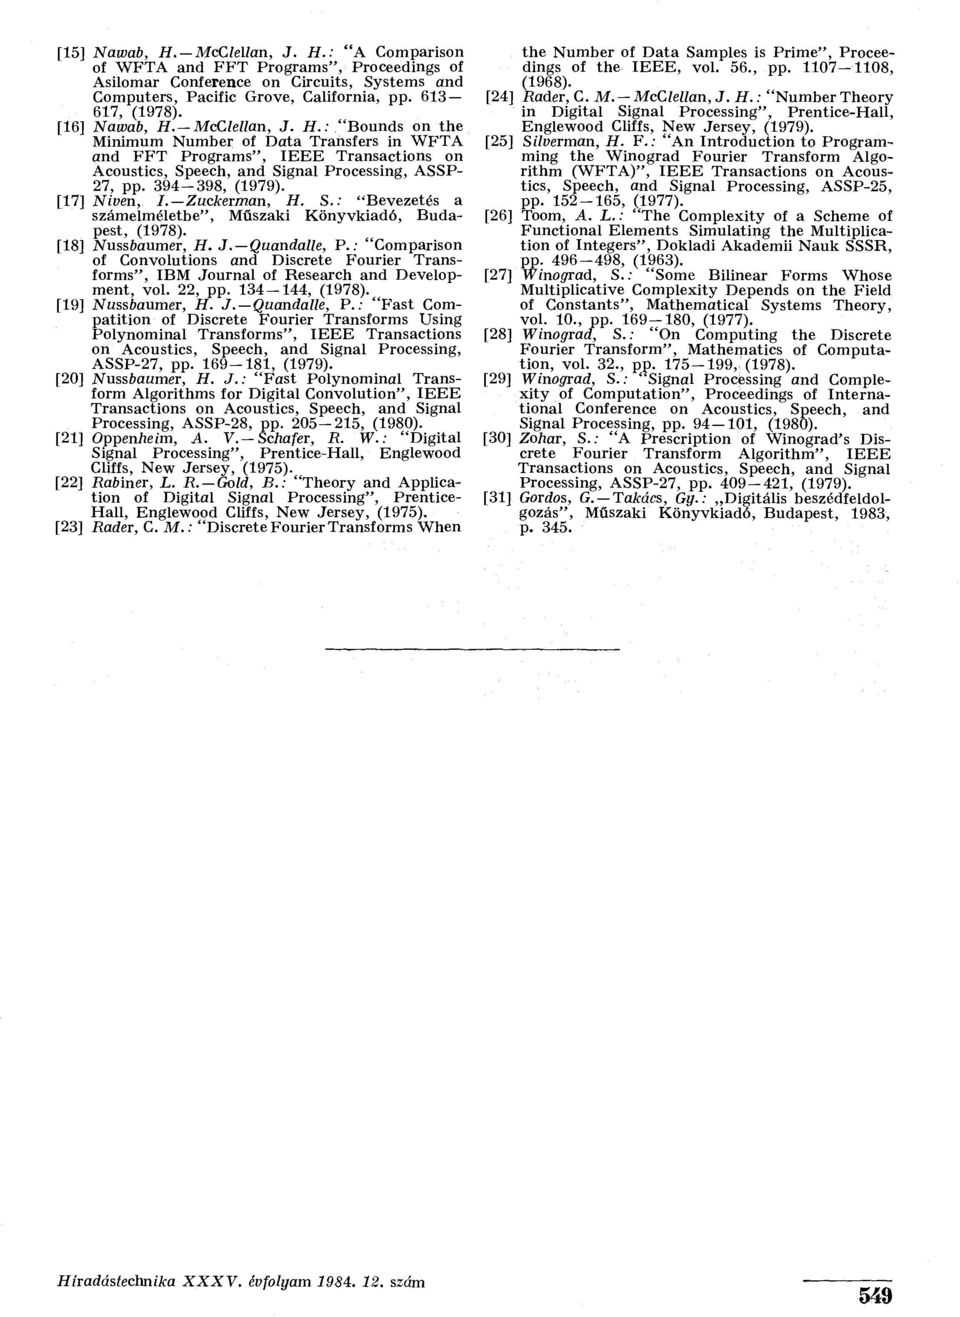 394-398, (1979). [17] Niven, I. Zuckerman, H. S.: "Bevezetés a számelméletbe", Műszaki Könyvkiadó, Budapest, (1978). [18] Nussbaumer, H. J. Quandalle, P.